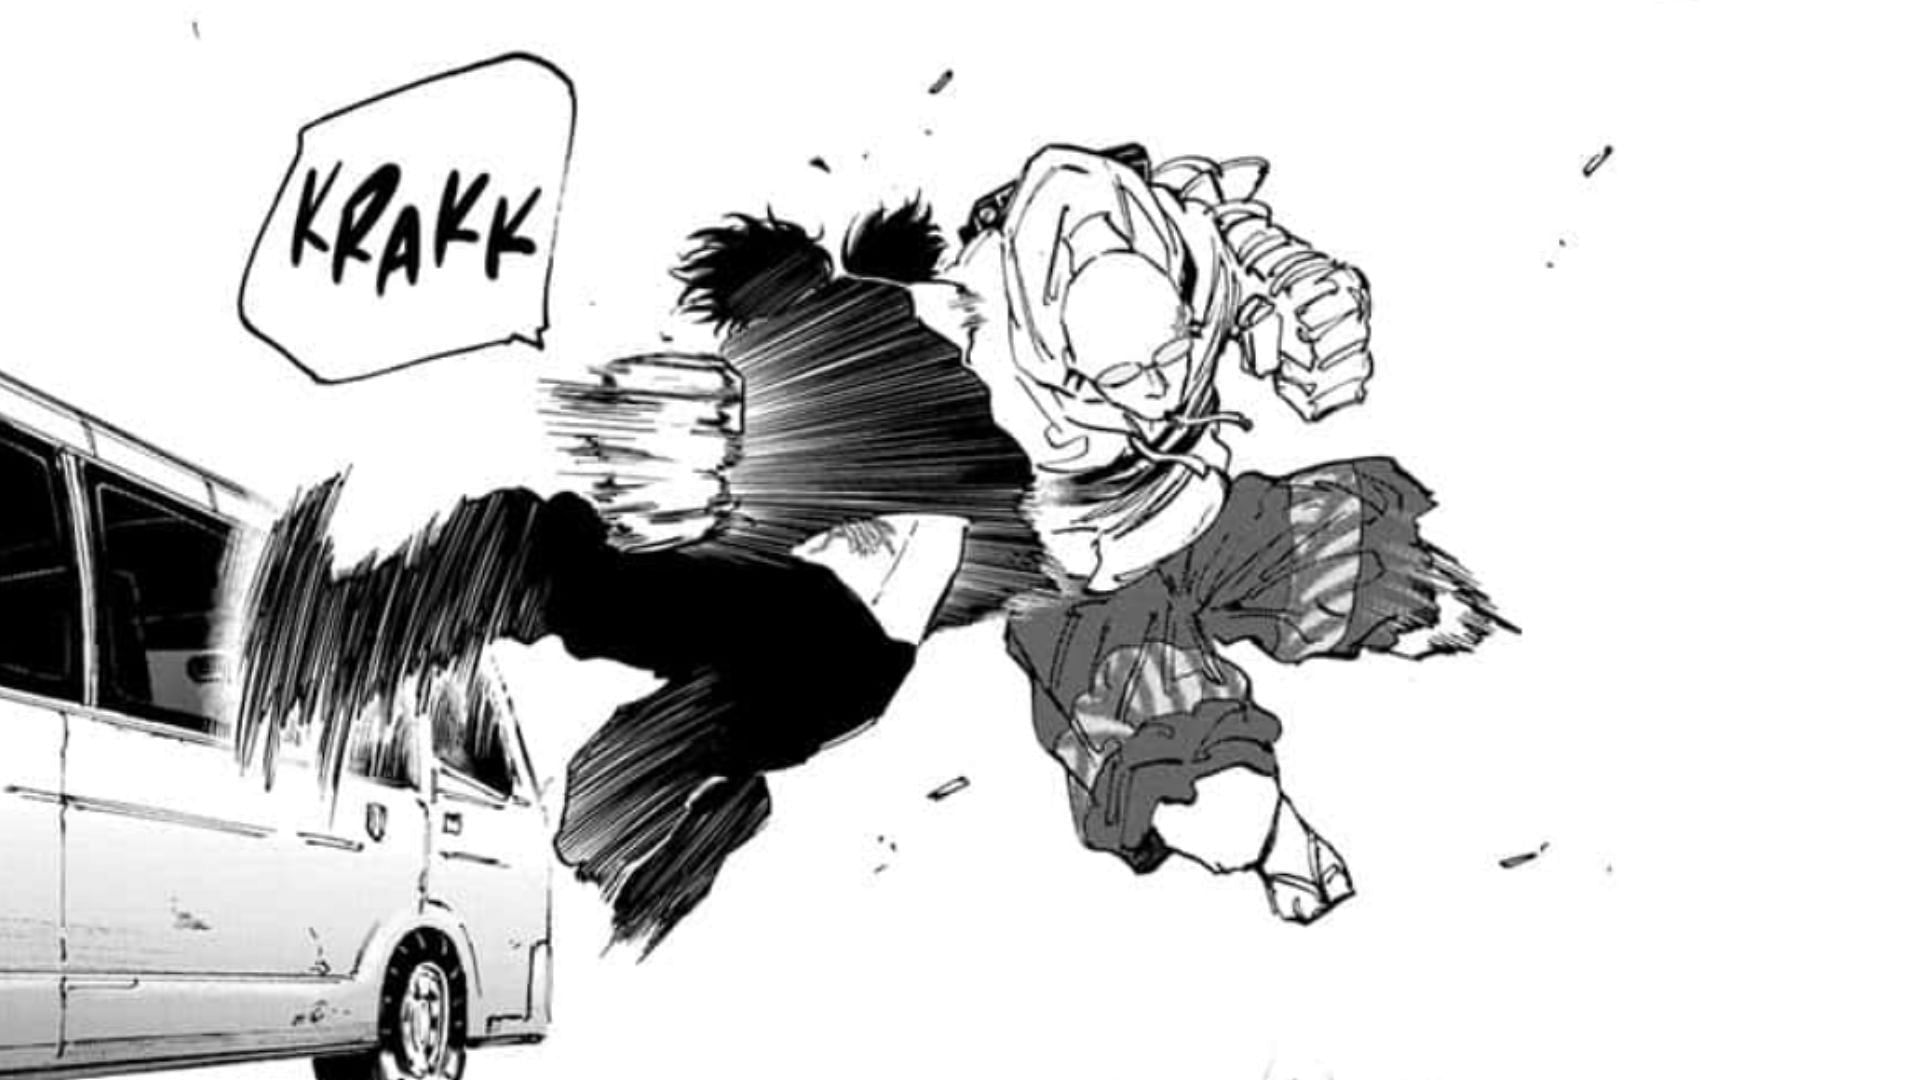 Higuchi attacks Nagumo as seen in the manga (Image via Yuto Suzuki/Shueisha, Sakamoto Days)